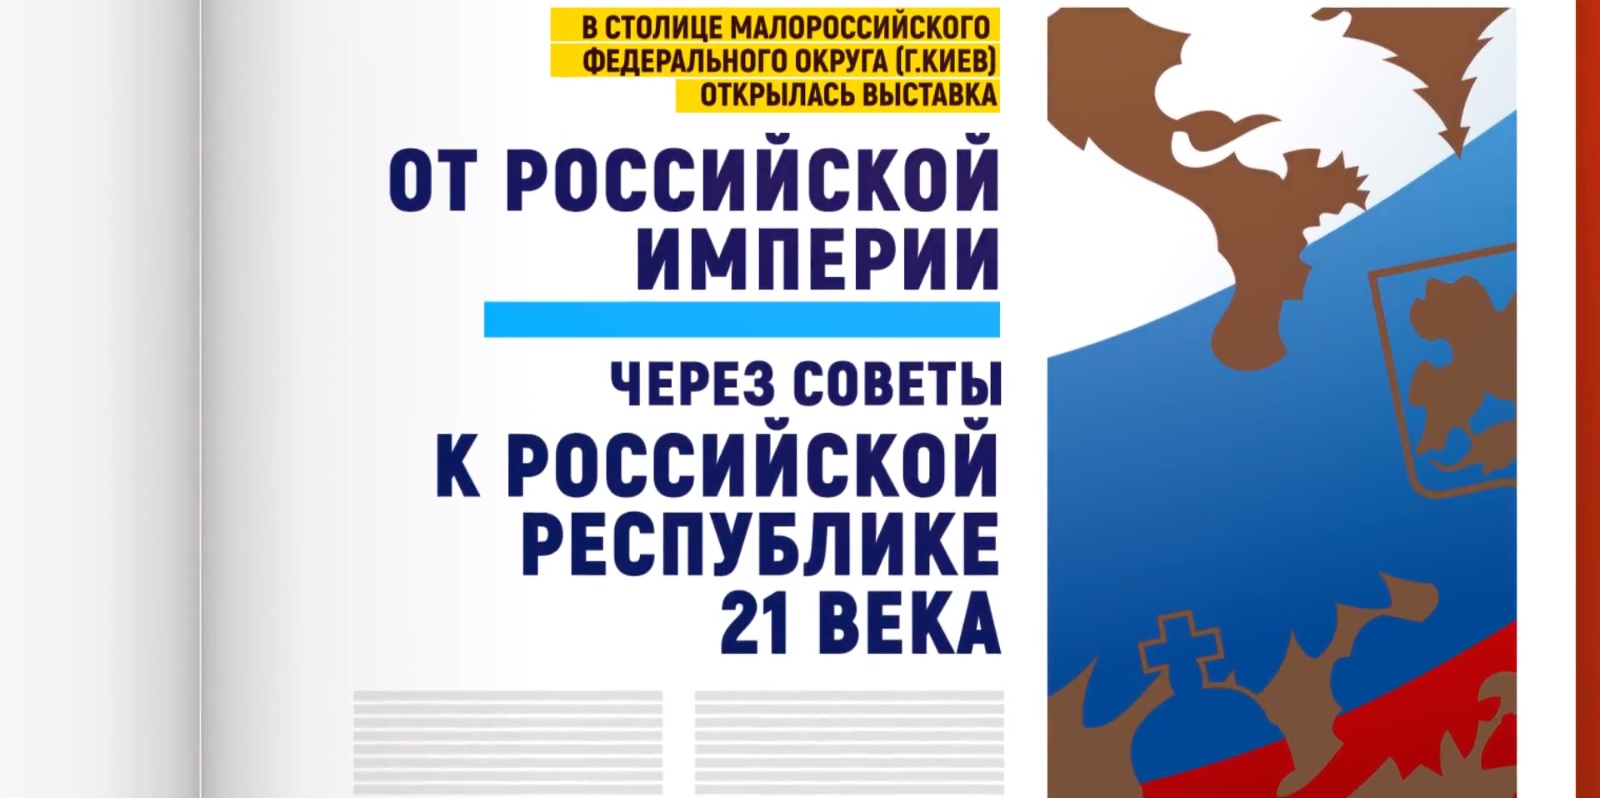 В рекламе в поддержку Жириновского Киев назвали столицей «малороссийского федерального округа»